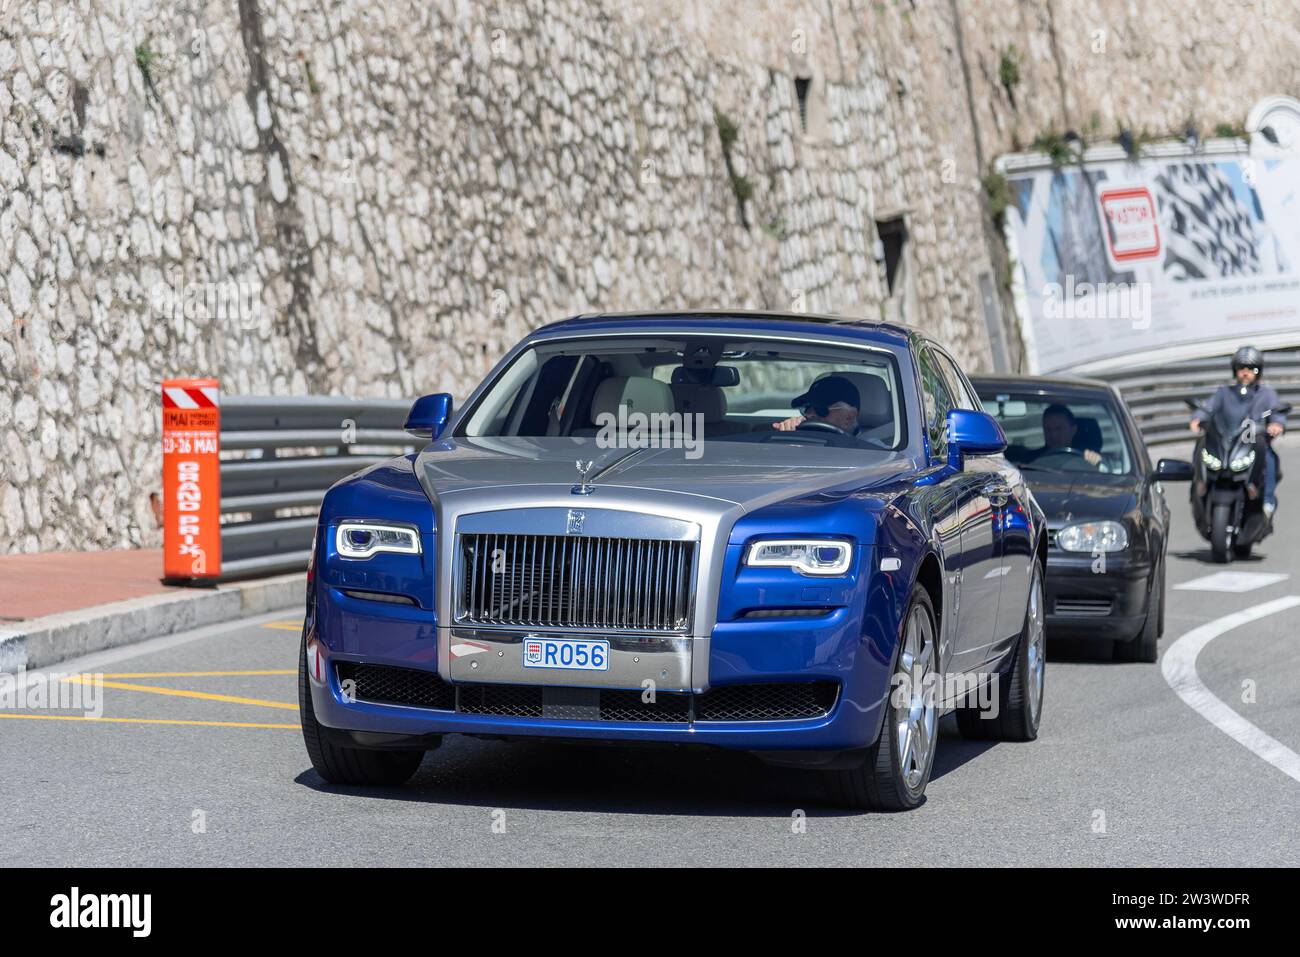 Monaco, Monaco - Rolls-Royce Ghost Series II bleu et gris roulant sur la route en épingle à cheveux Fairmont. Banque D'Images